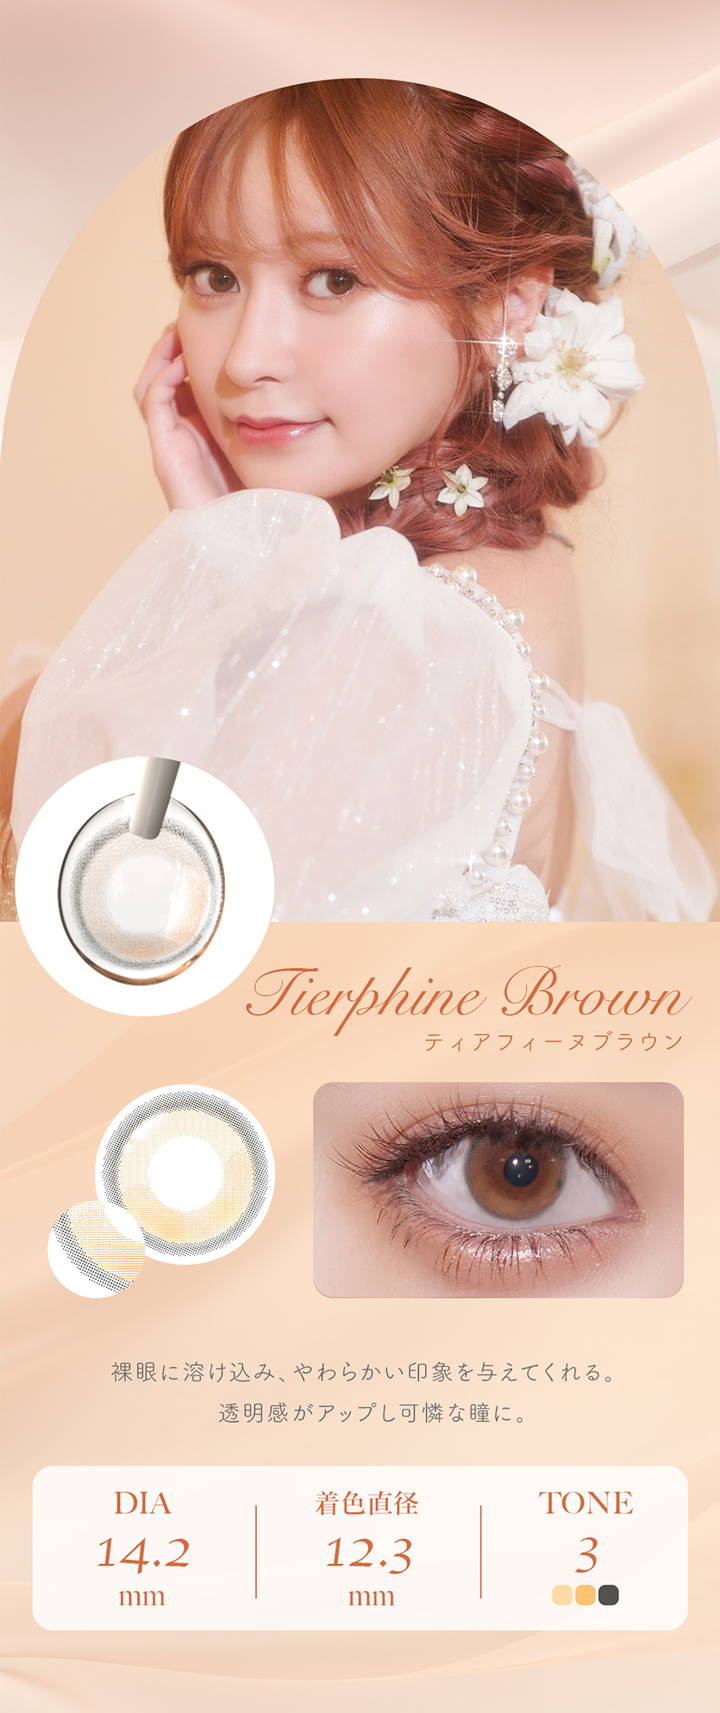 フェレーヌ(ferenne),Tierphine Brown,ティアフィーヌブラウン,裸眼に溶け込み、やわらかい印象を与えてくれる。,透明感がアップし可憐な瞳に。,DIA 14.2mm,着色直径 12.3mm,TONE 3,カラコン,カラーコンタクト